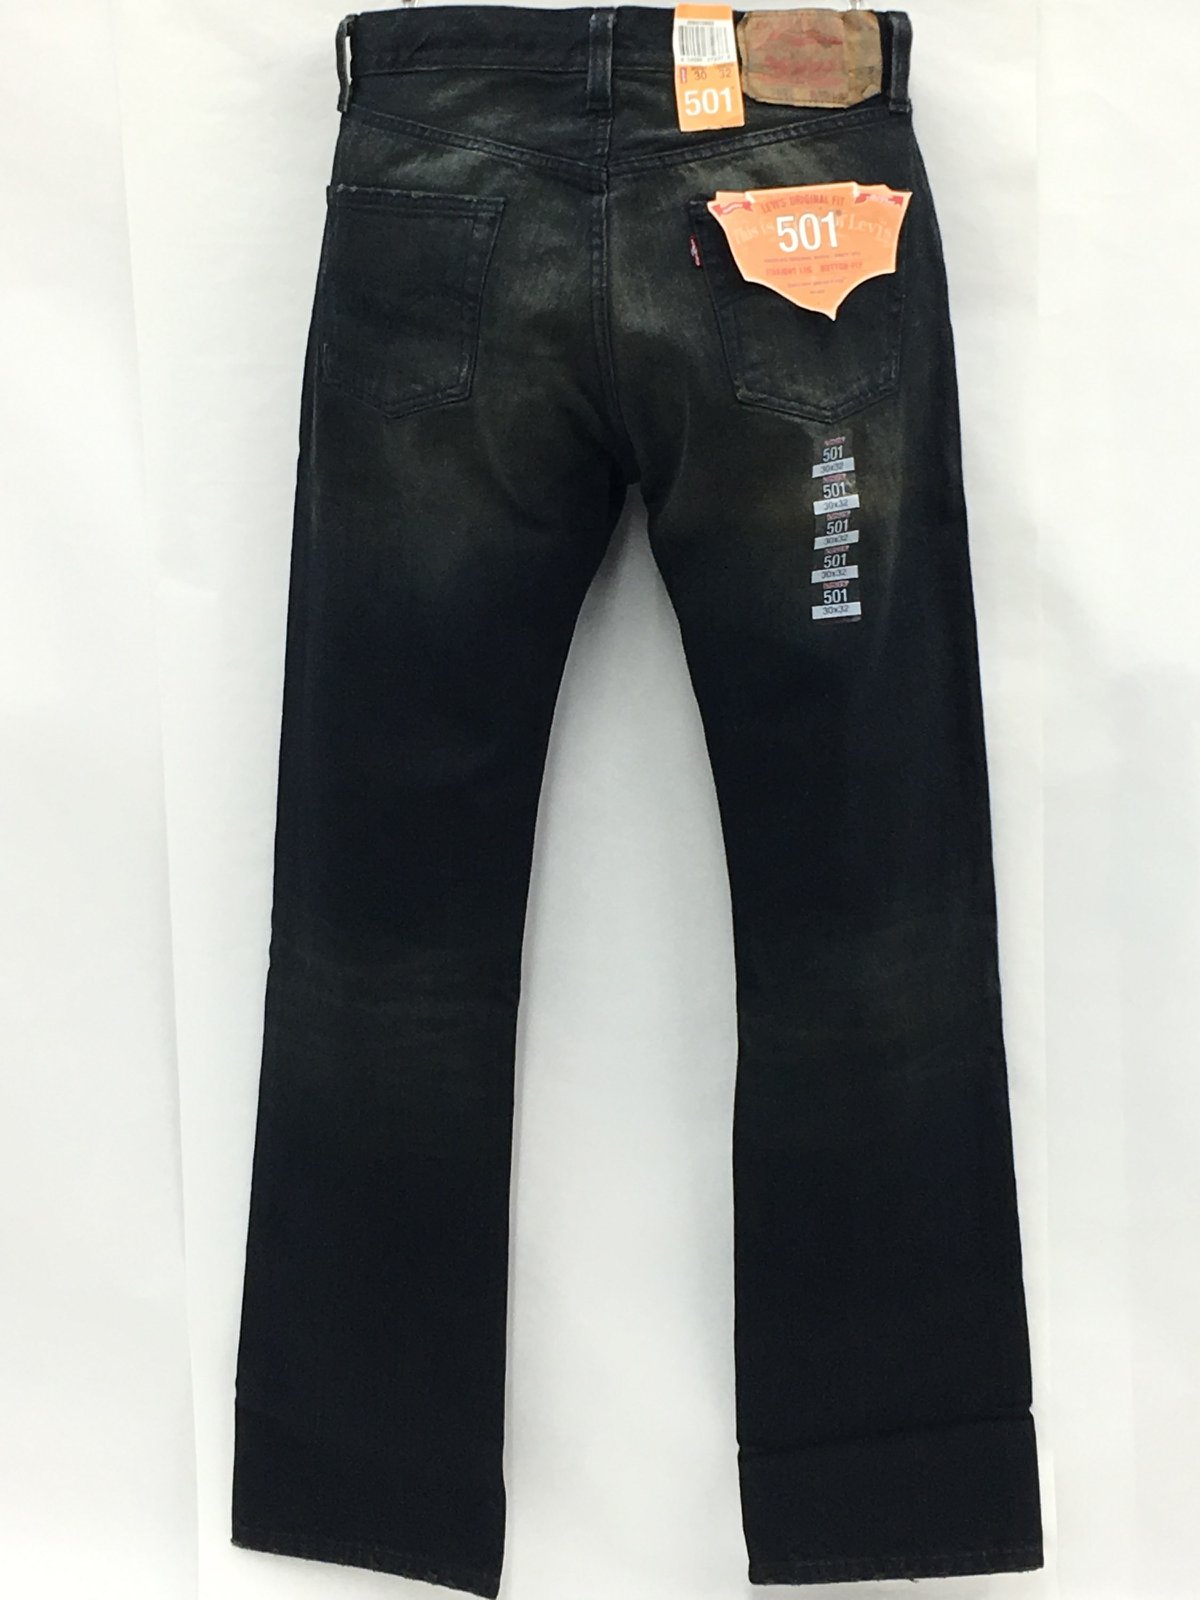 Levi's® 501® Original Jeans - Black Ditch - The Jeans Warehouse